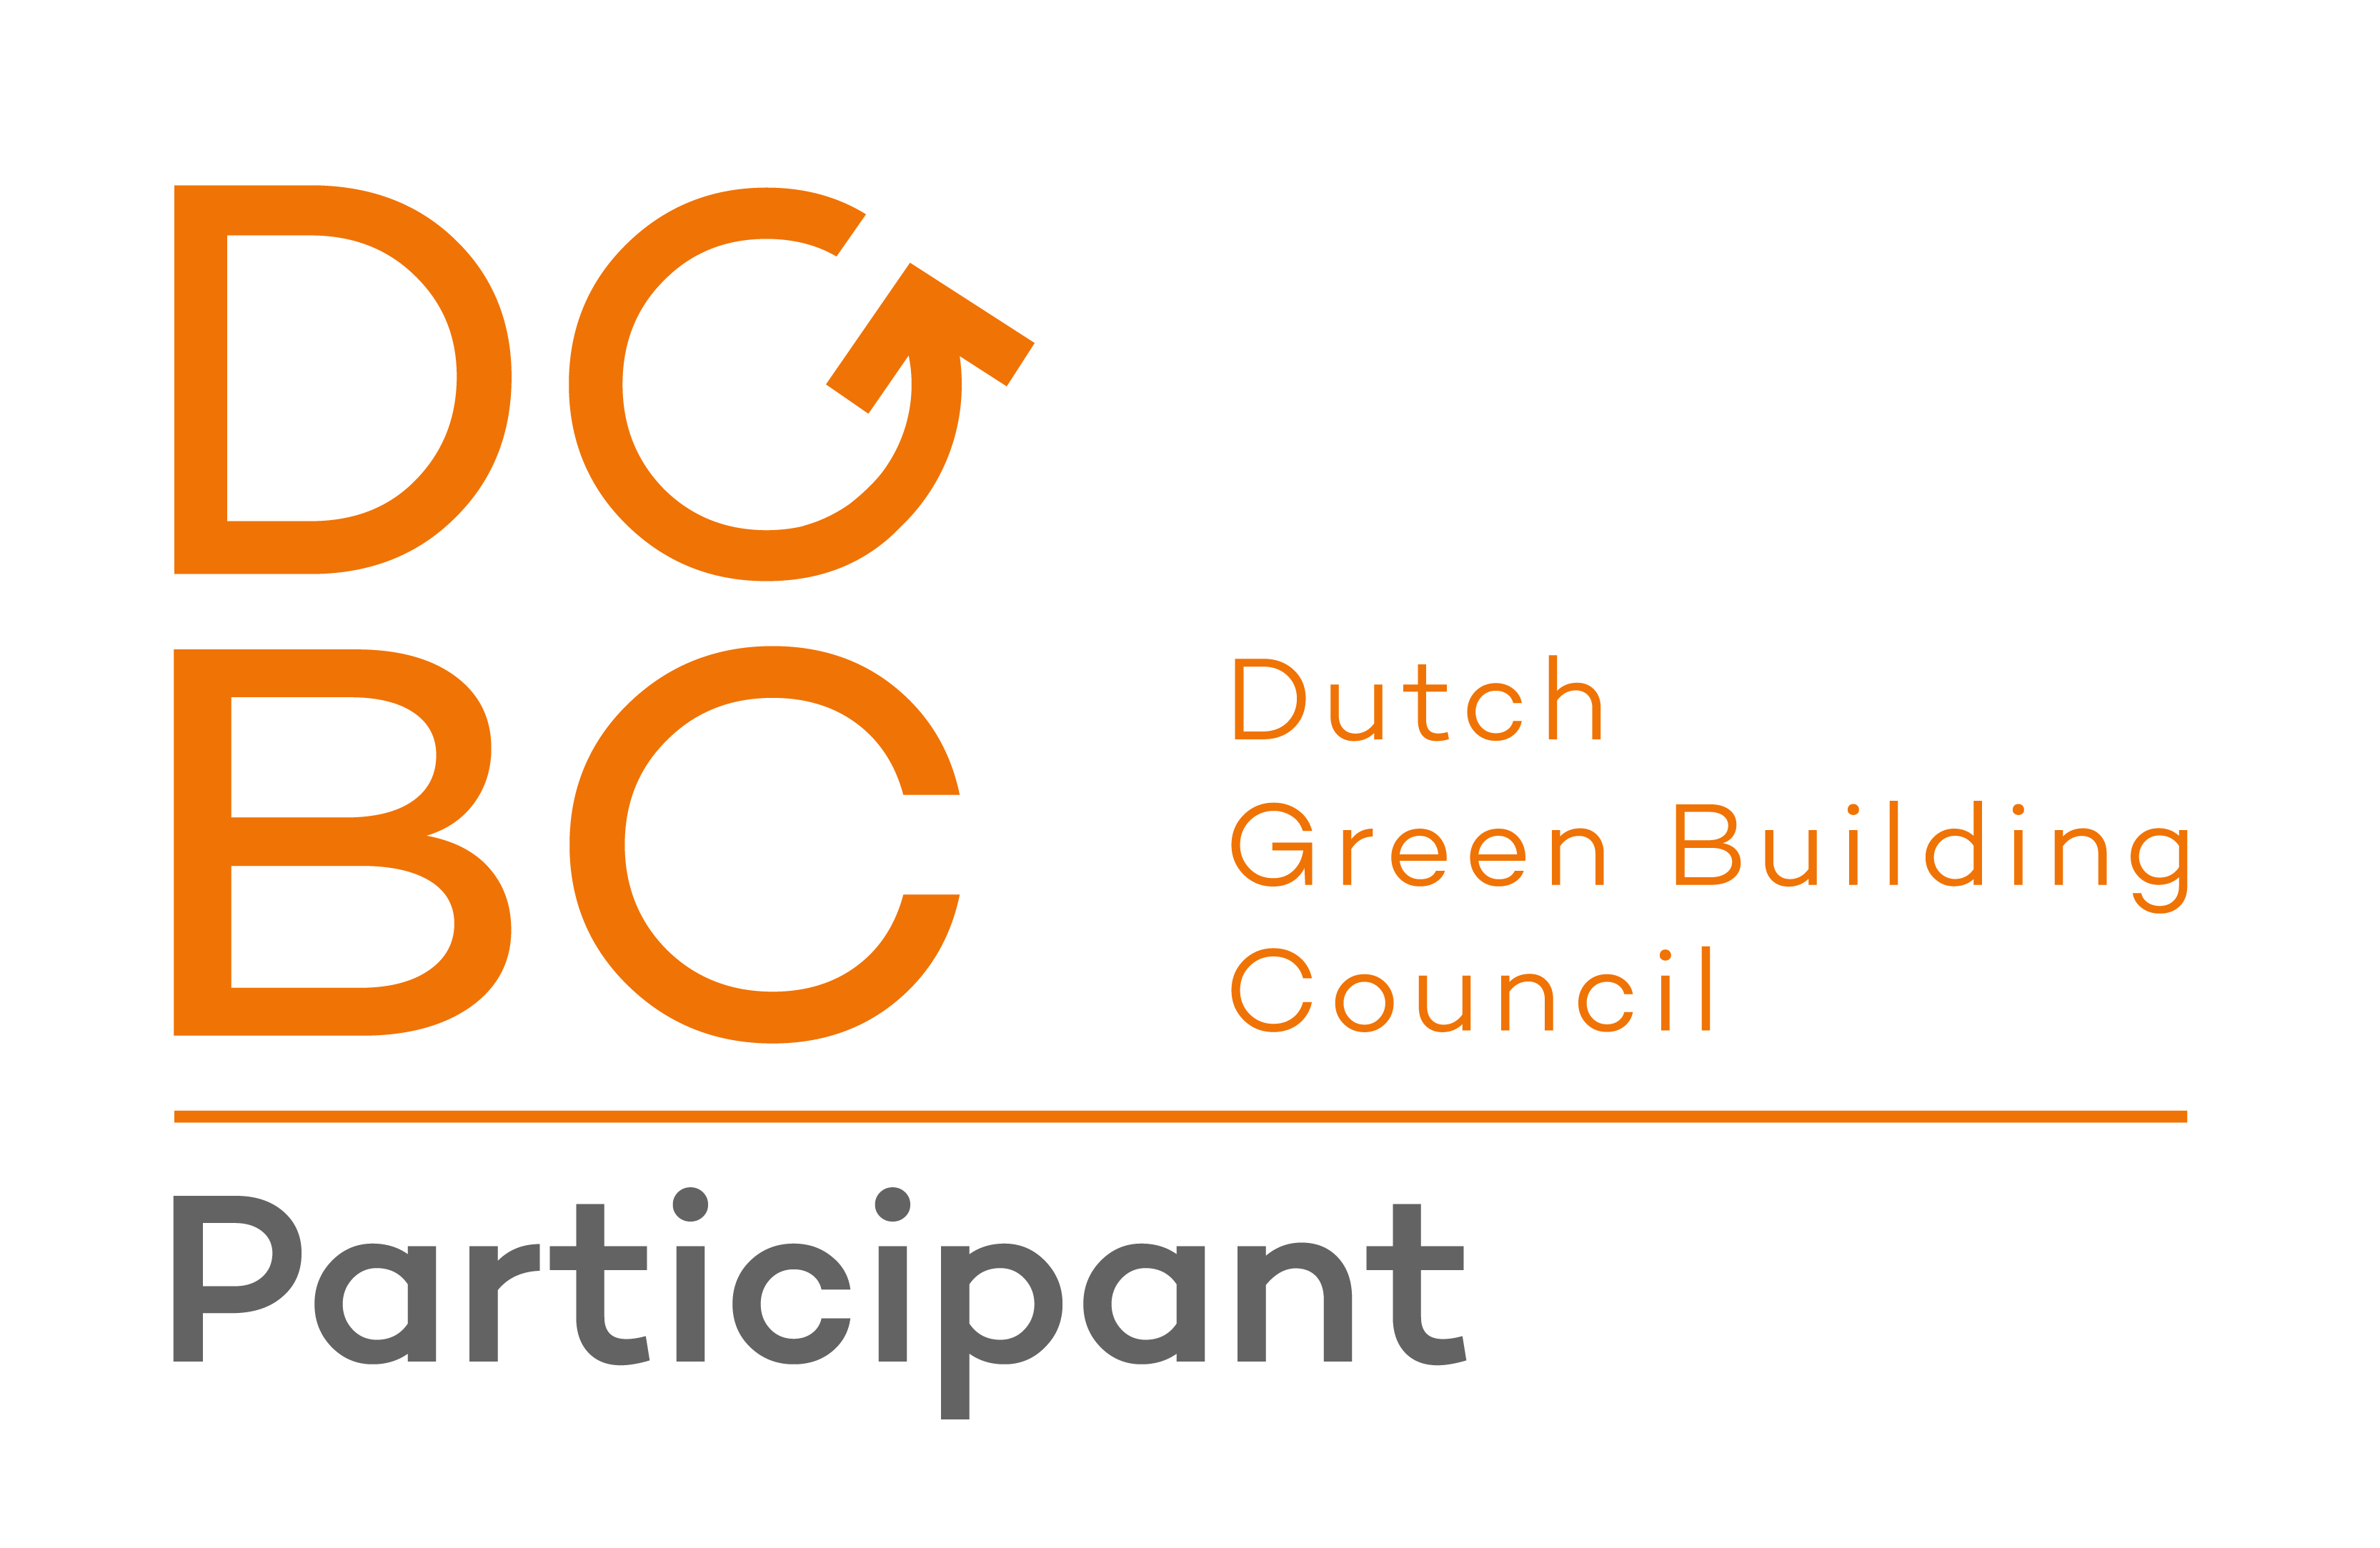 Dutch Green Building Council participant